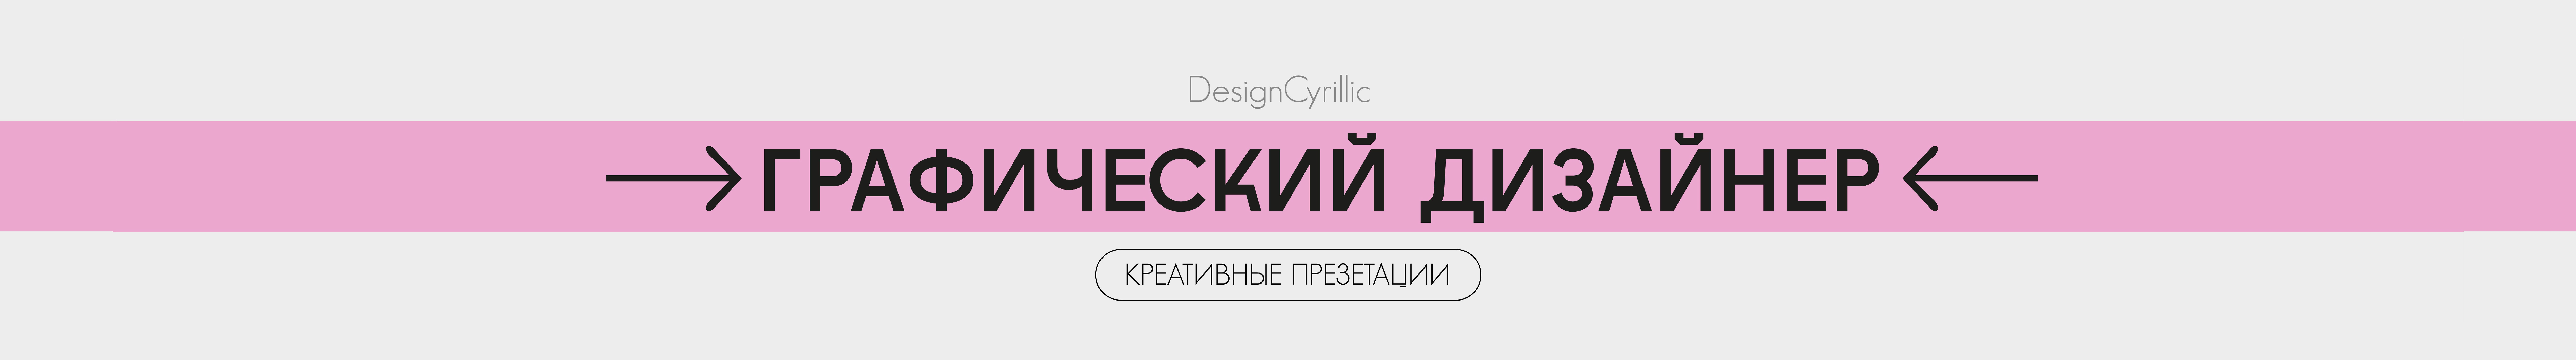 Design Cyrillic's profile banner